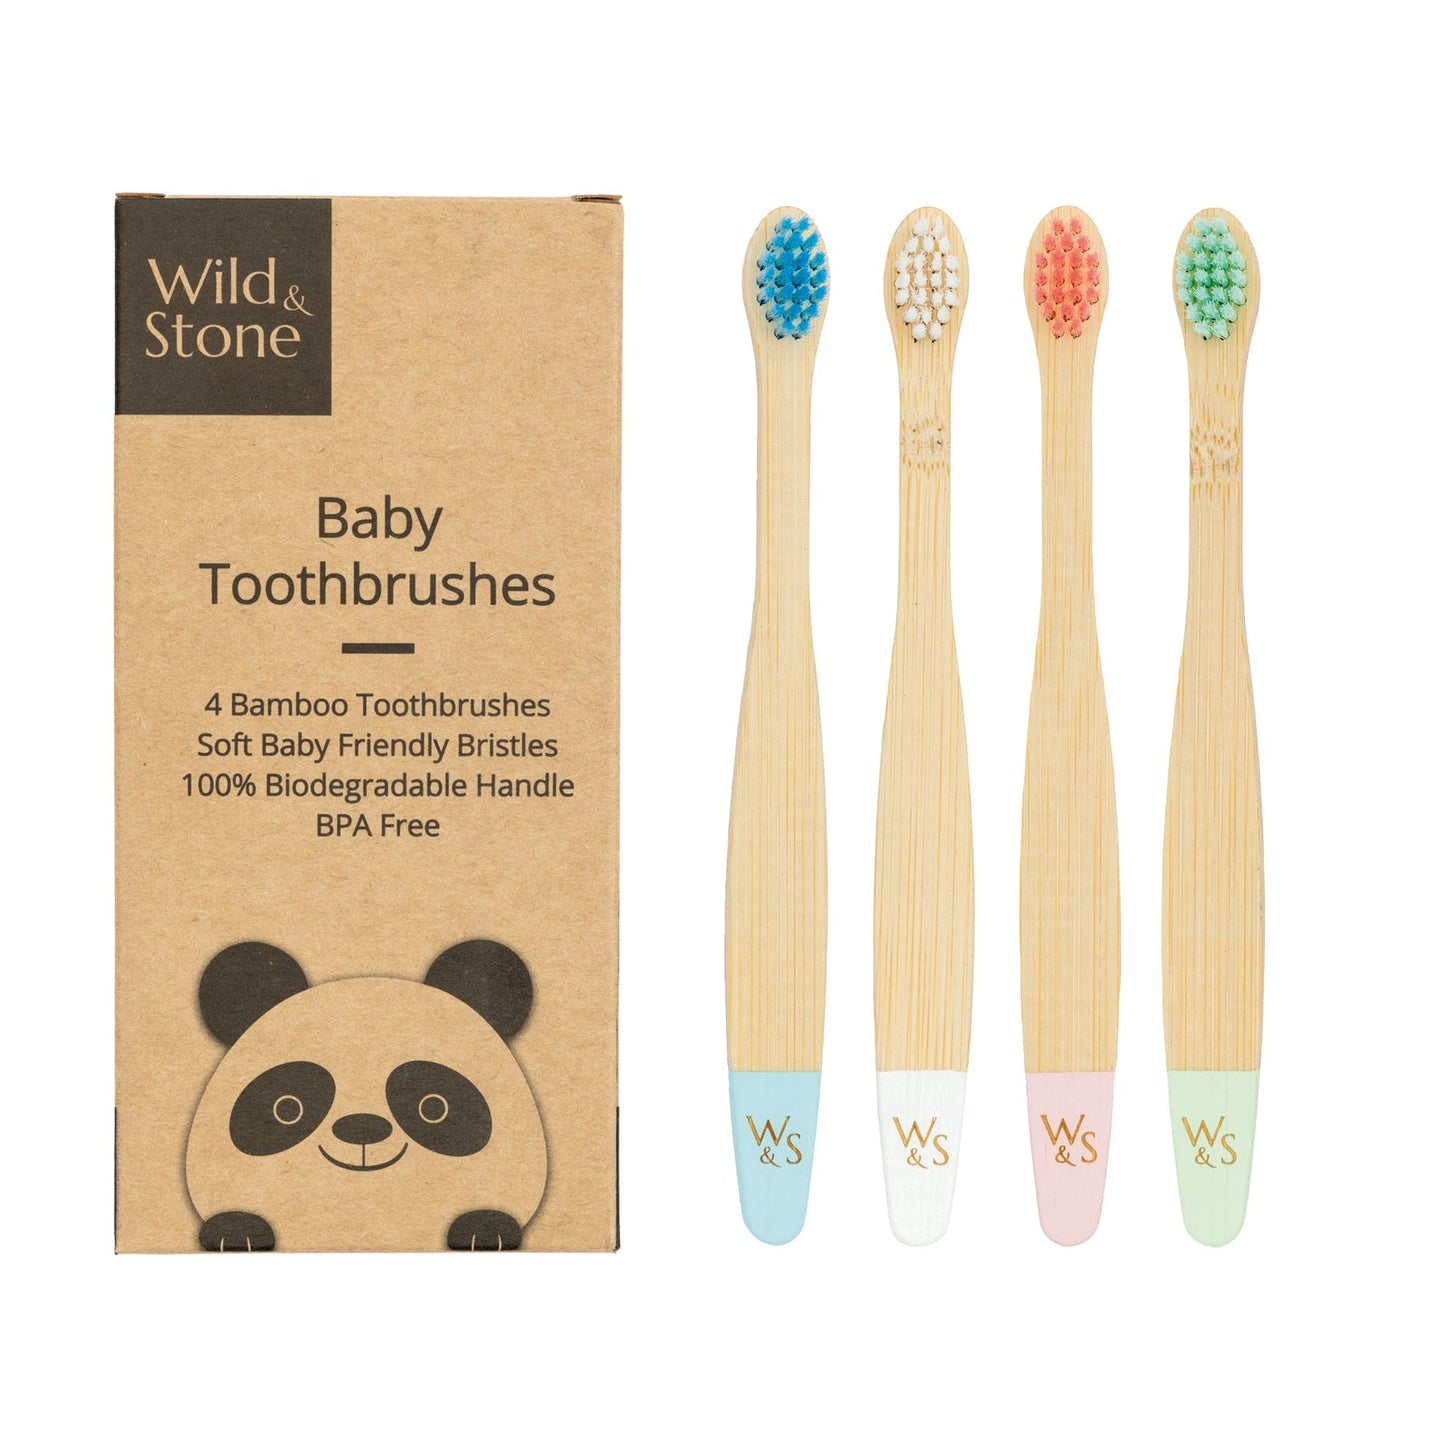 Periuță de dinți din bambus pentru bebeluși,4 buc - Wild&Stone